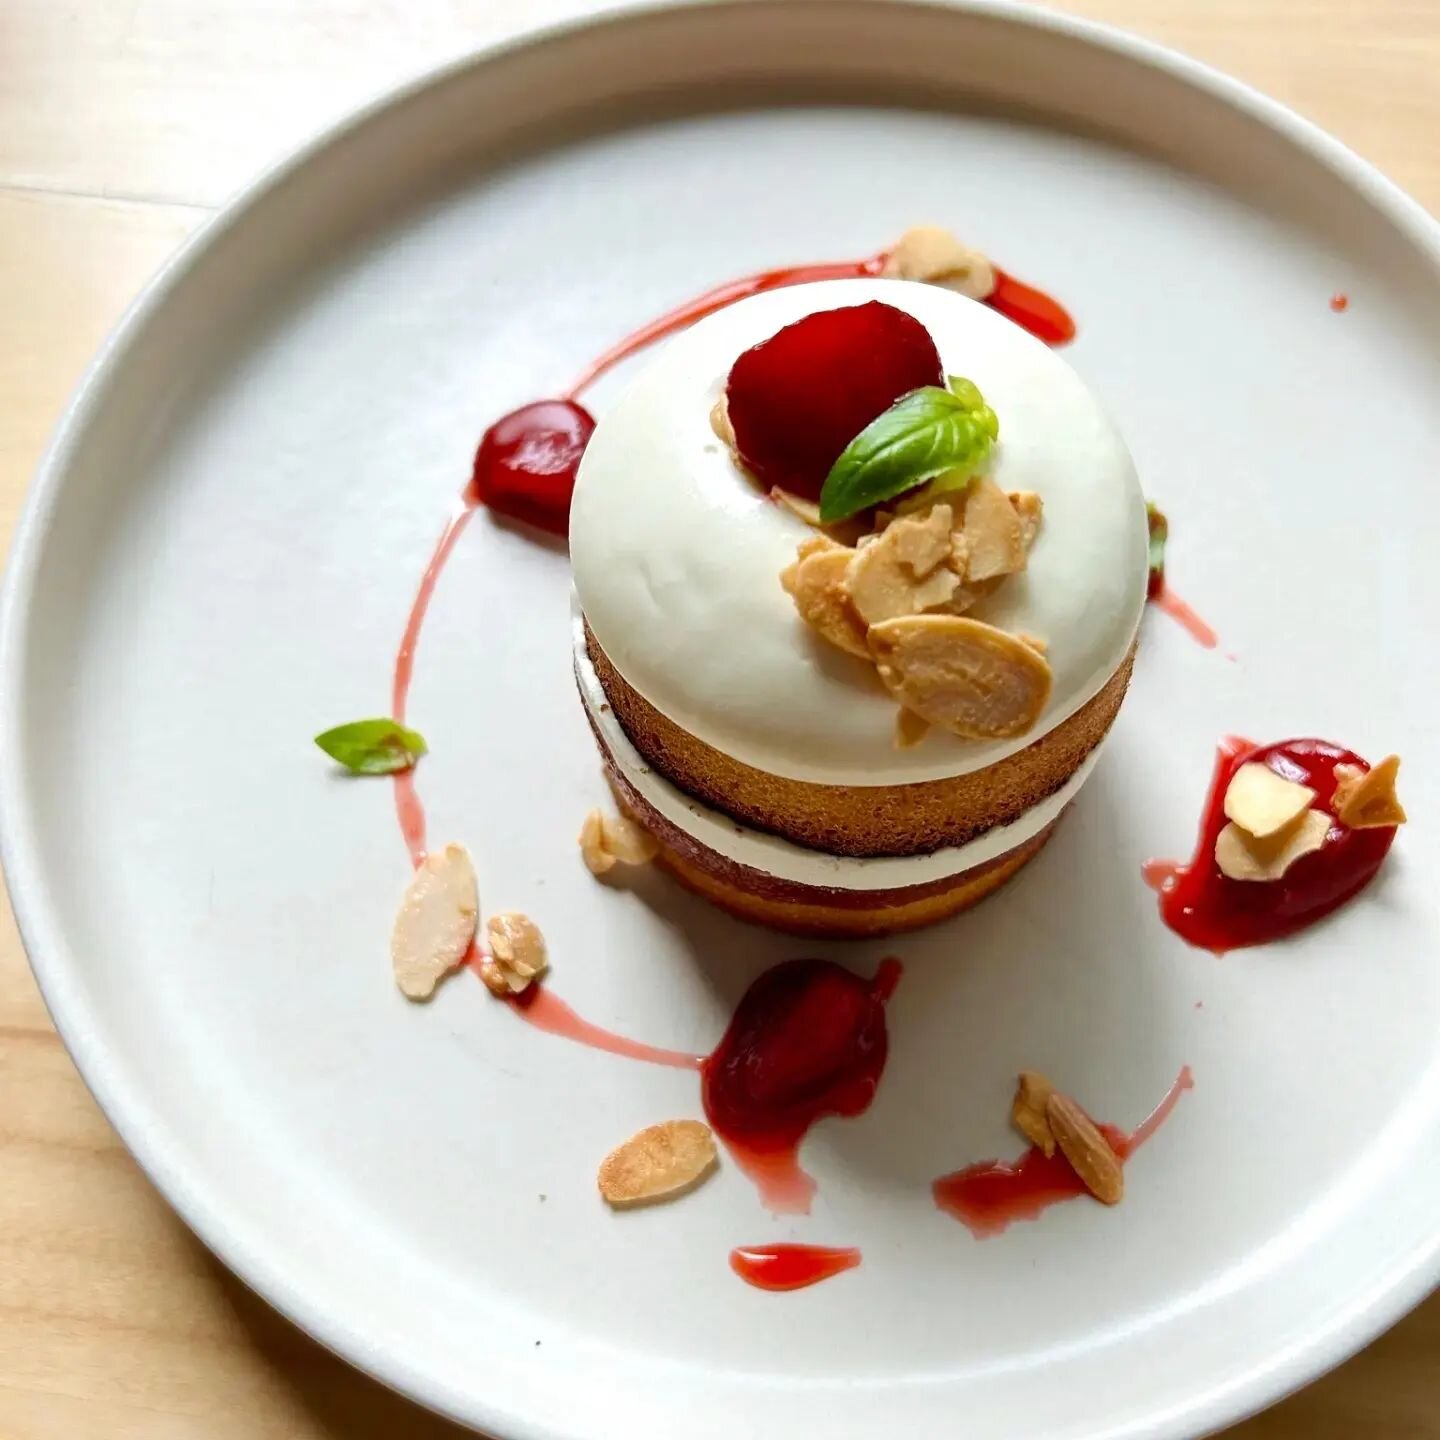 G&acirc;teaux aux amandes, compote de rhubarbe et cr&eacute;meux chocolat blanc 🤍 
( ajout de petites 🍓 r&ocirc;ties)
.
.
.
#dessert